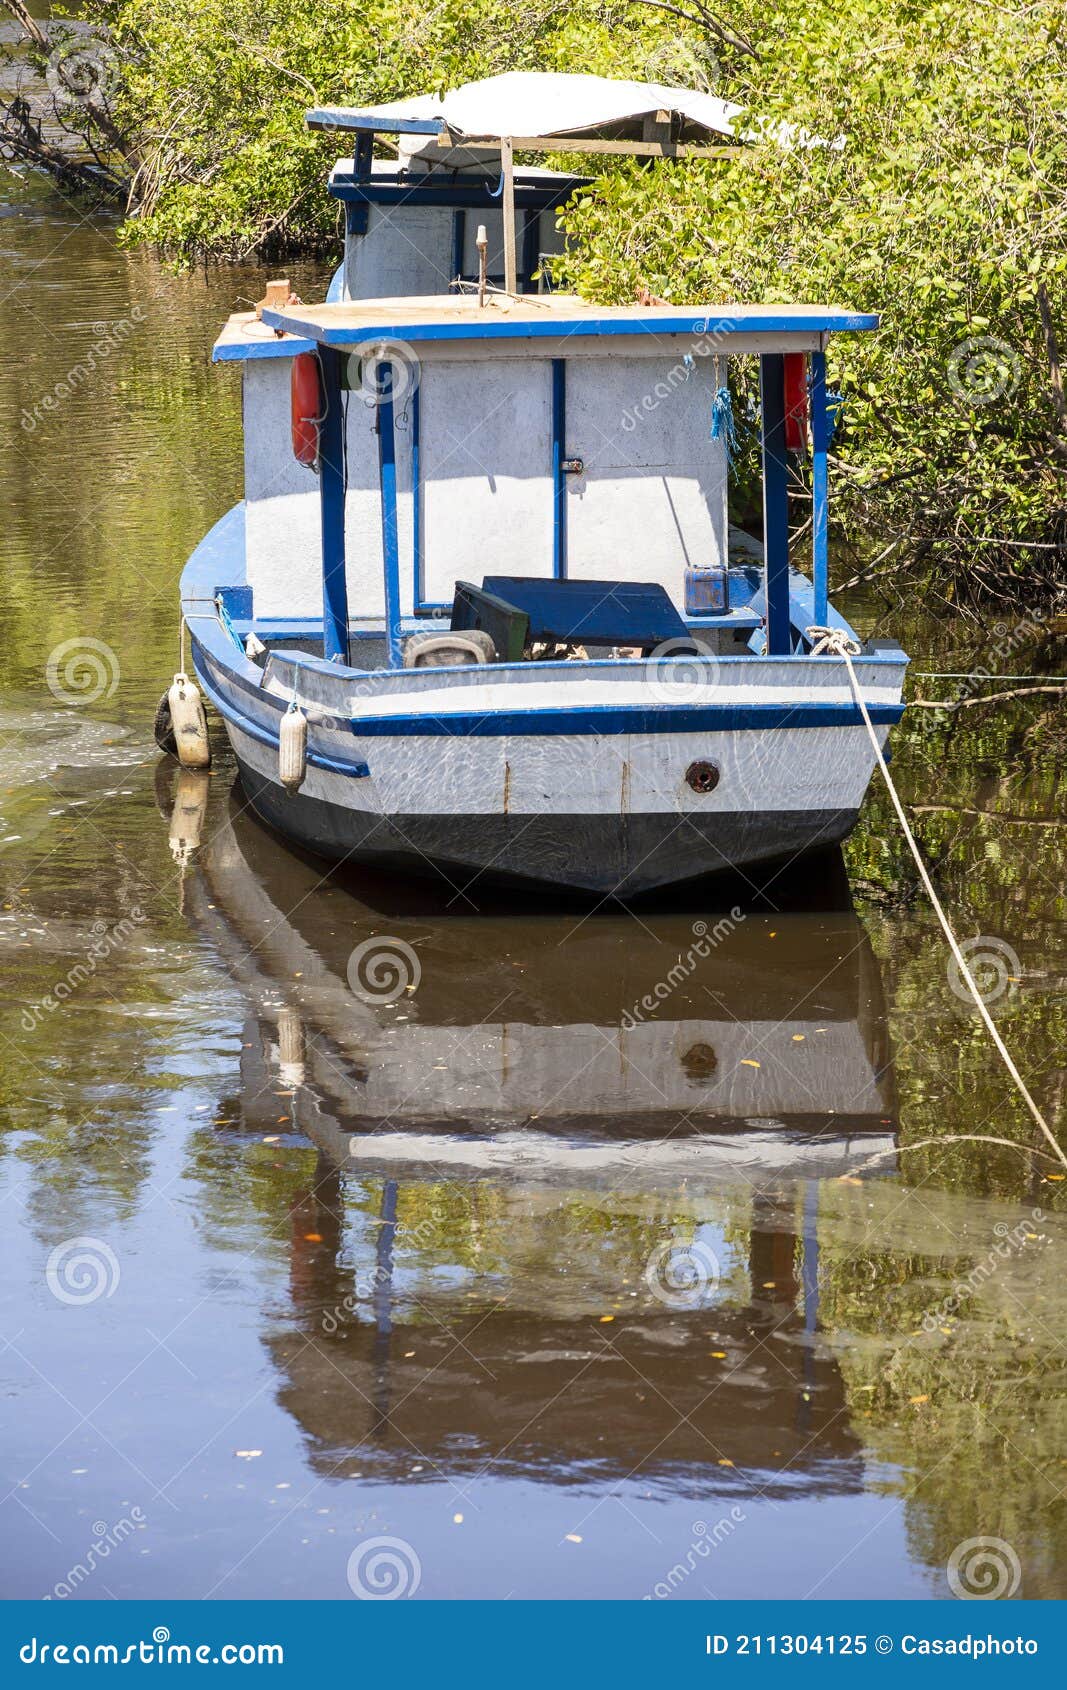 boats anchored, guaruja, sao paulo state, brazil